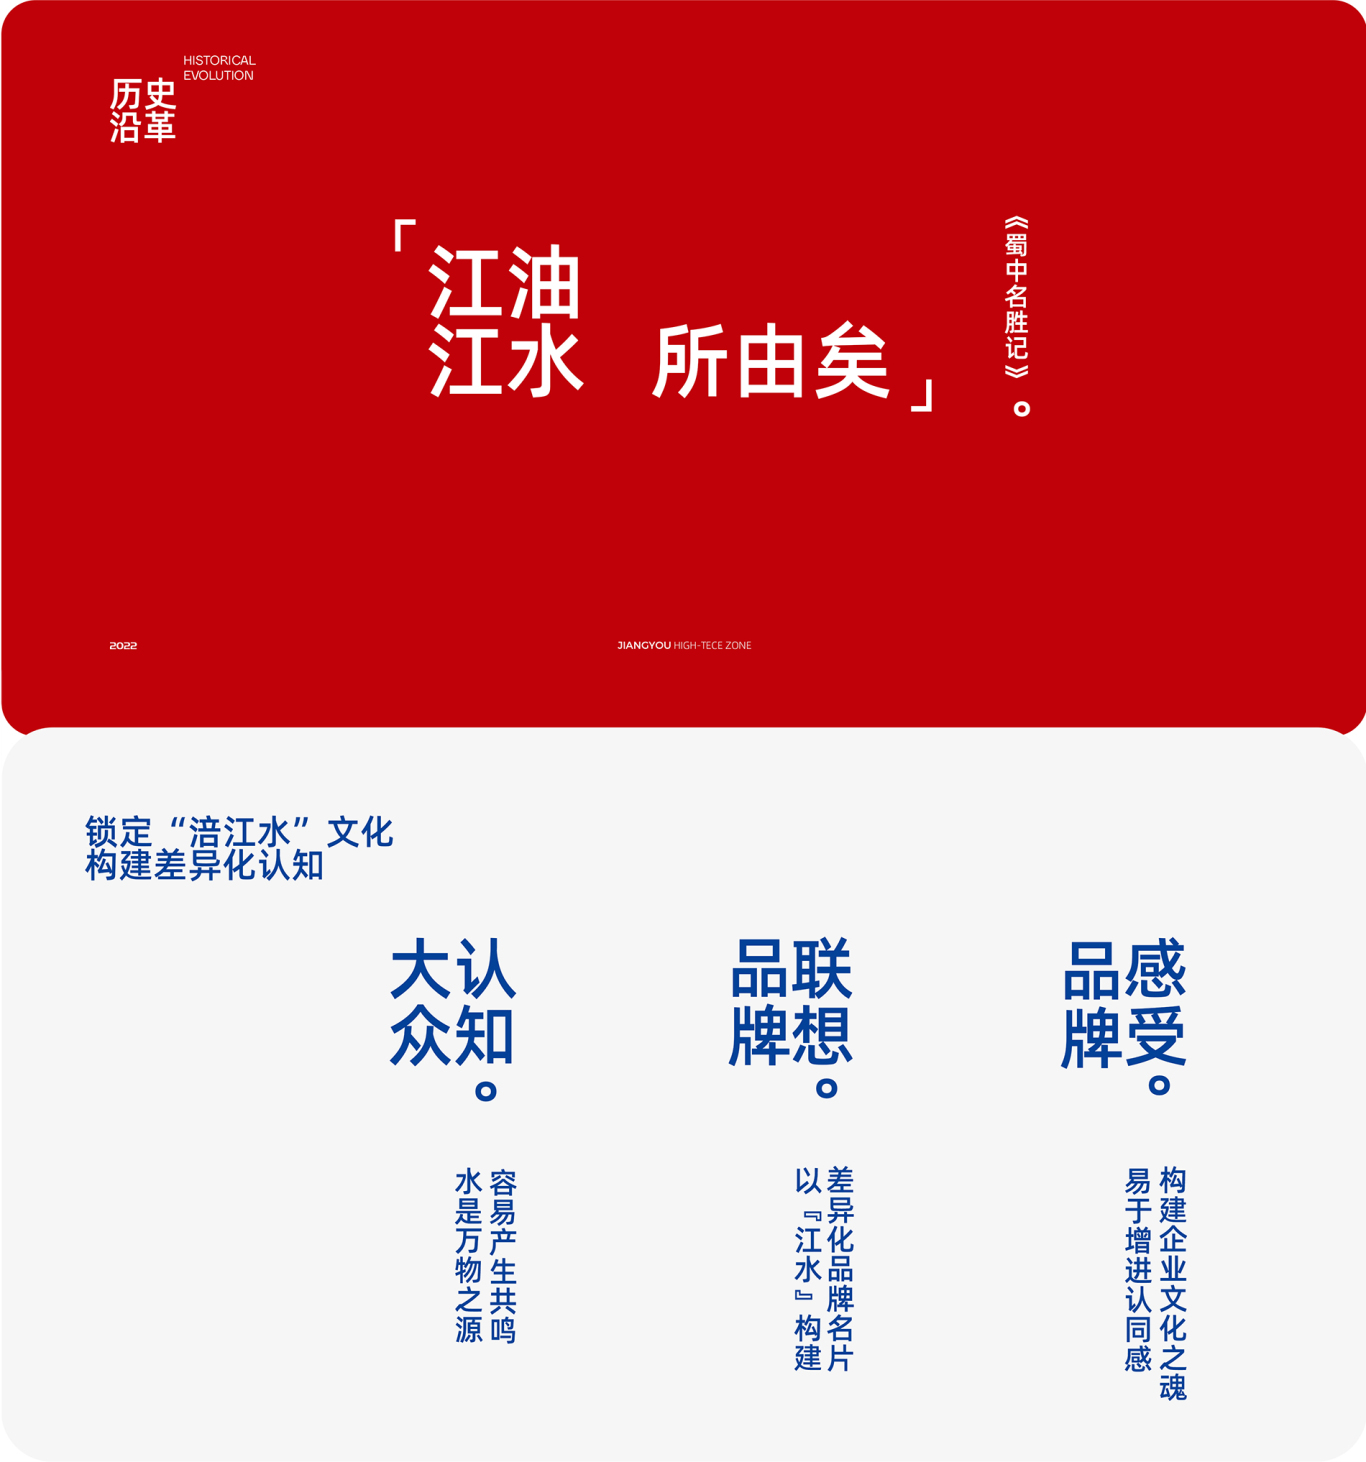 高新科技 智慧 字母類LOGO設計—江油高新區科技產業園品牌形象 標志VI升級圖4